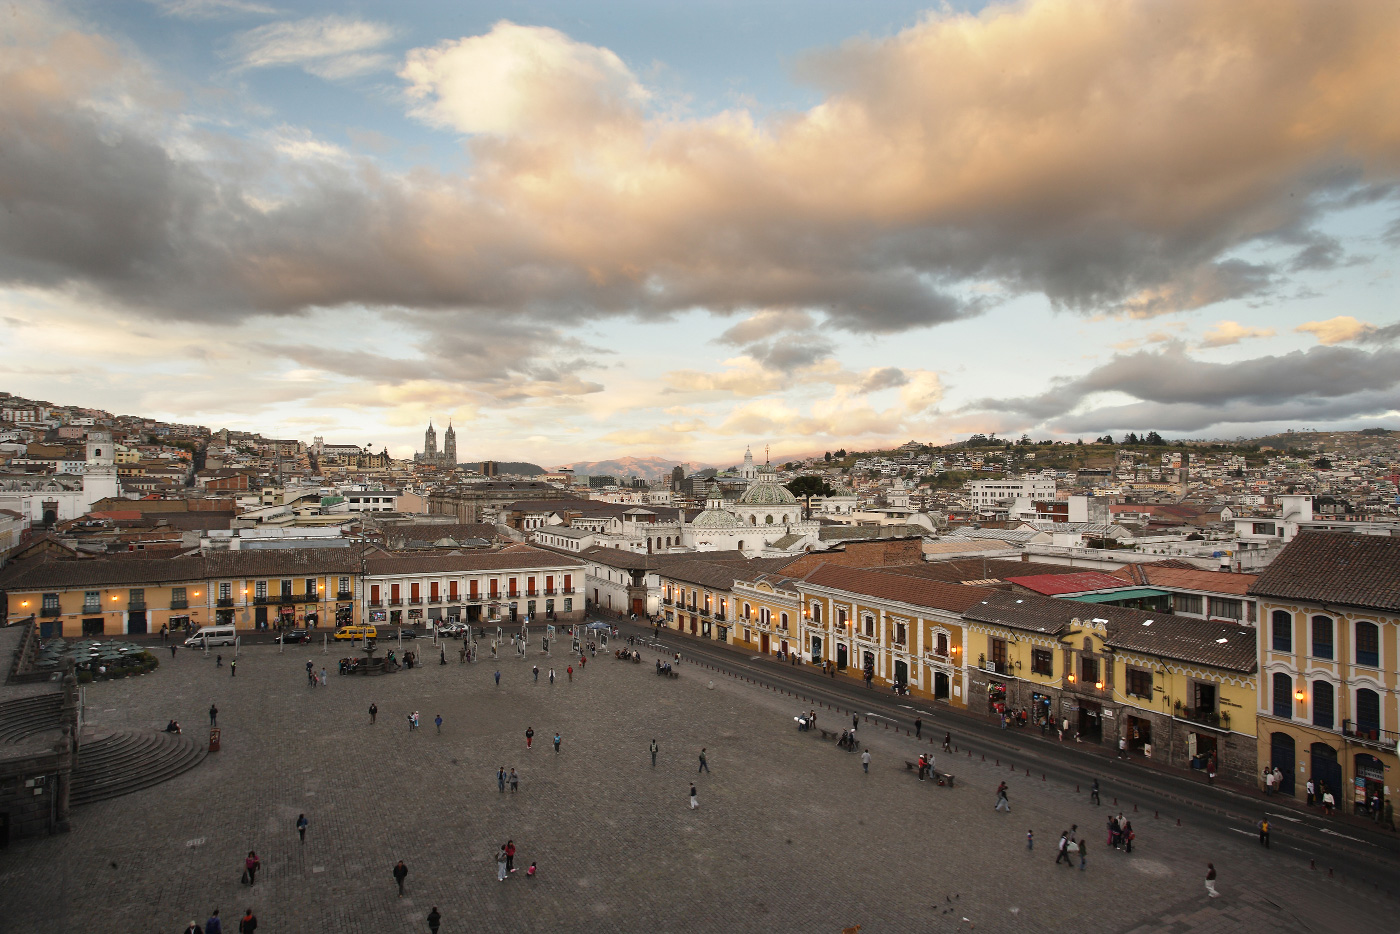 The Quito landscape